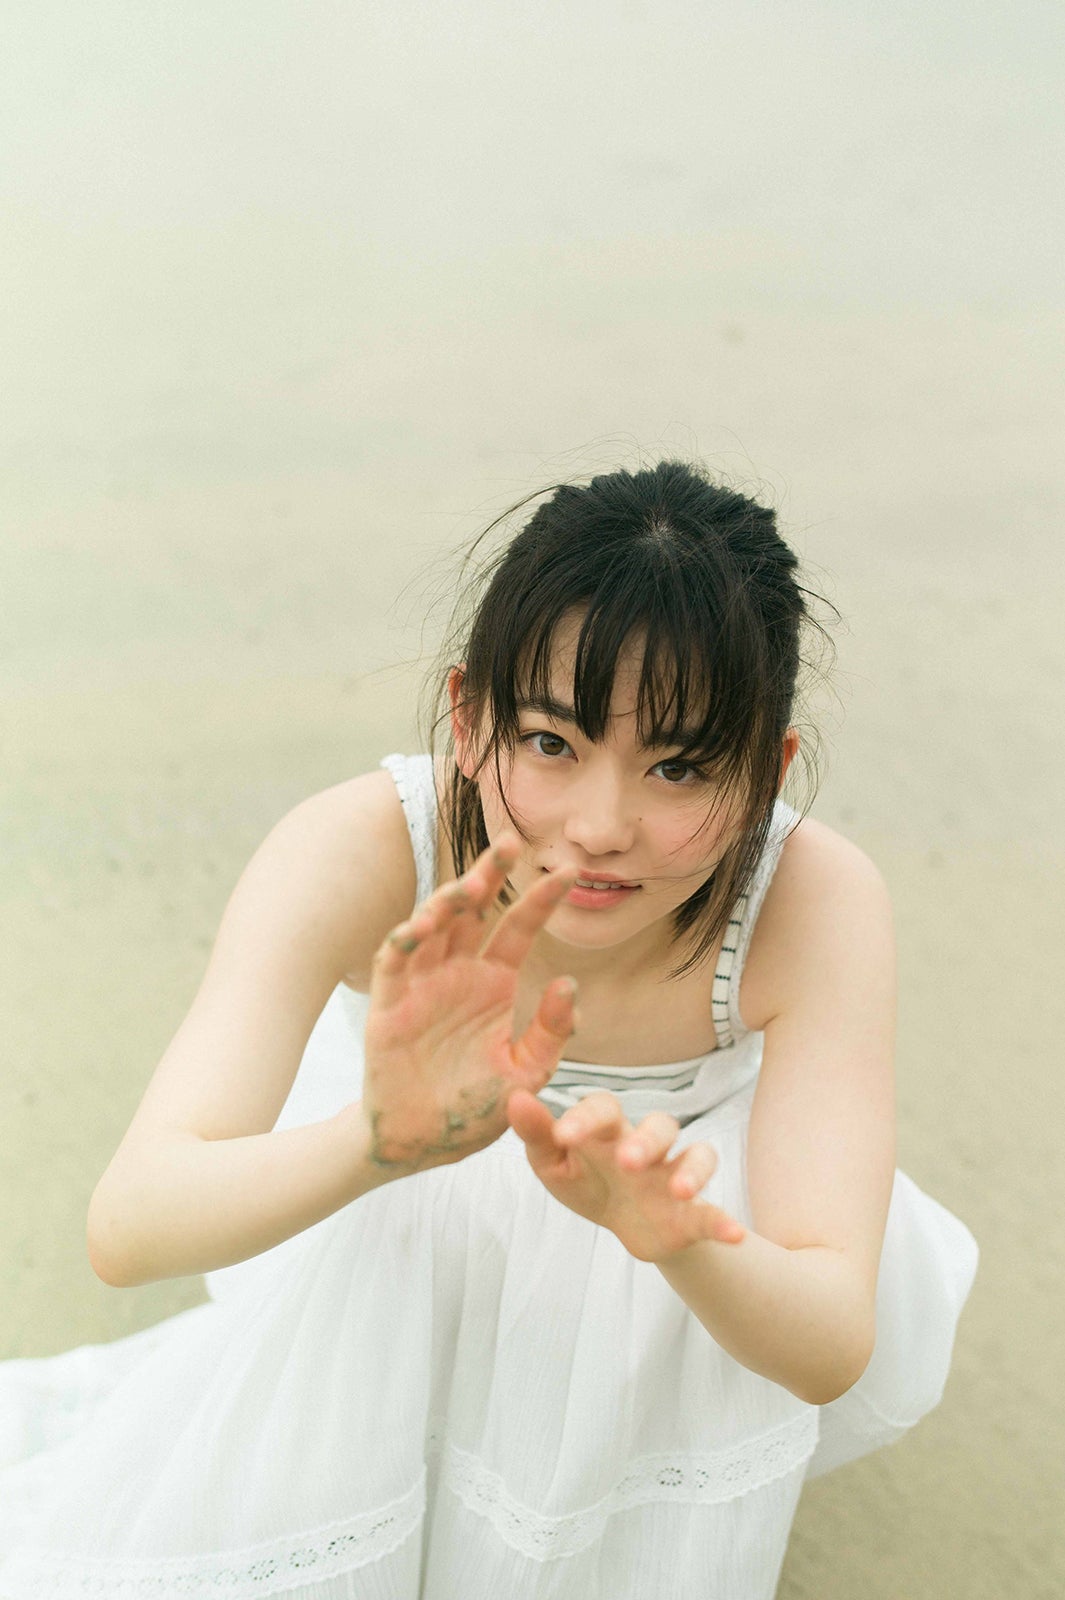 注目の若手女優 山田杏奈 初水着撮影に挑戦 透明感あふれる素肌で魅了 モデルプレス